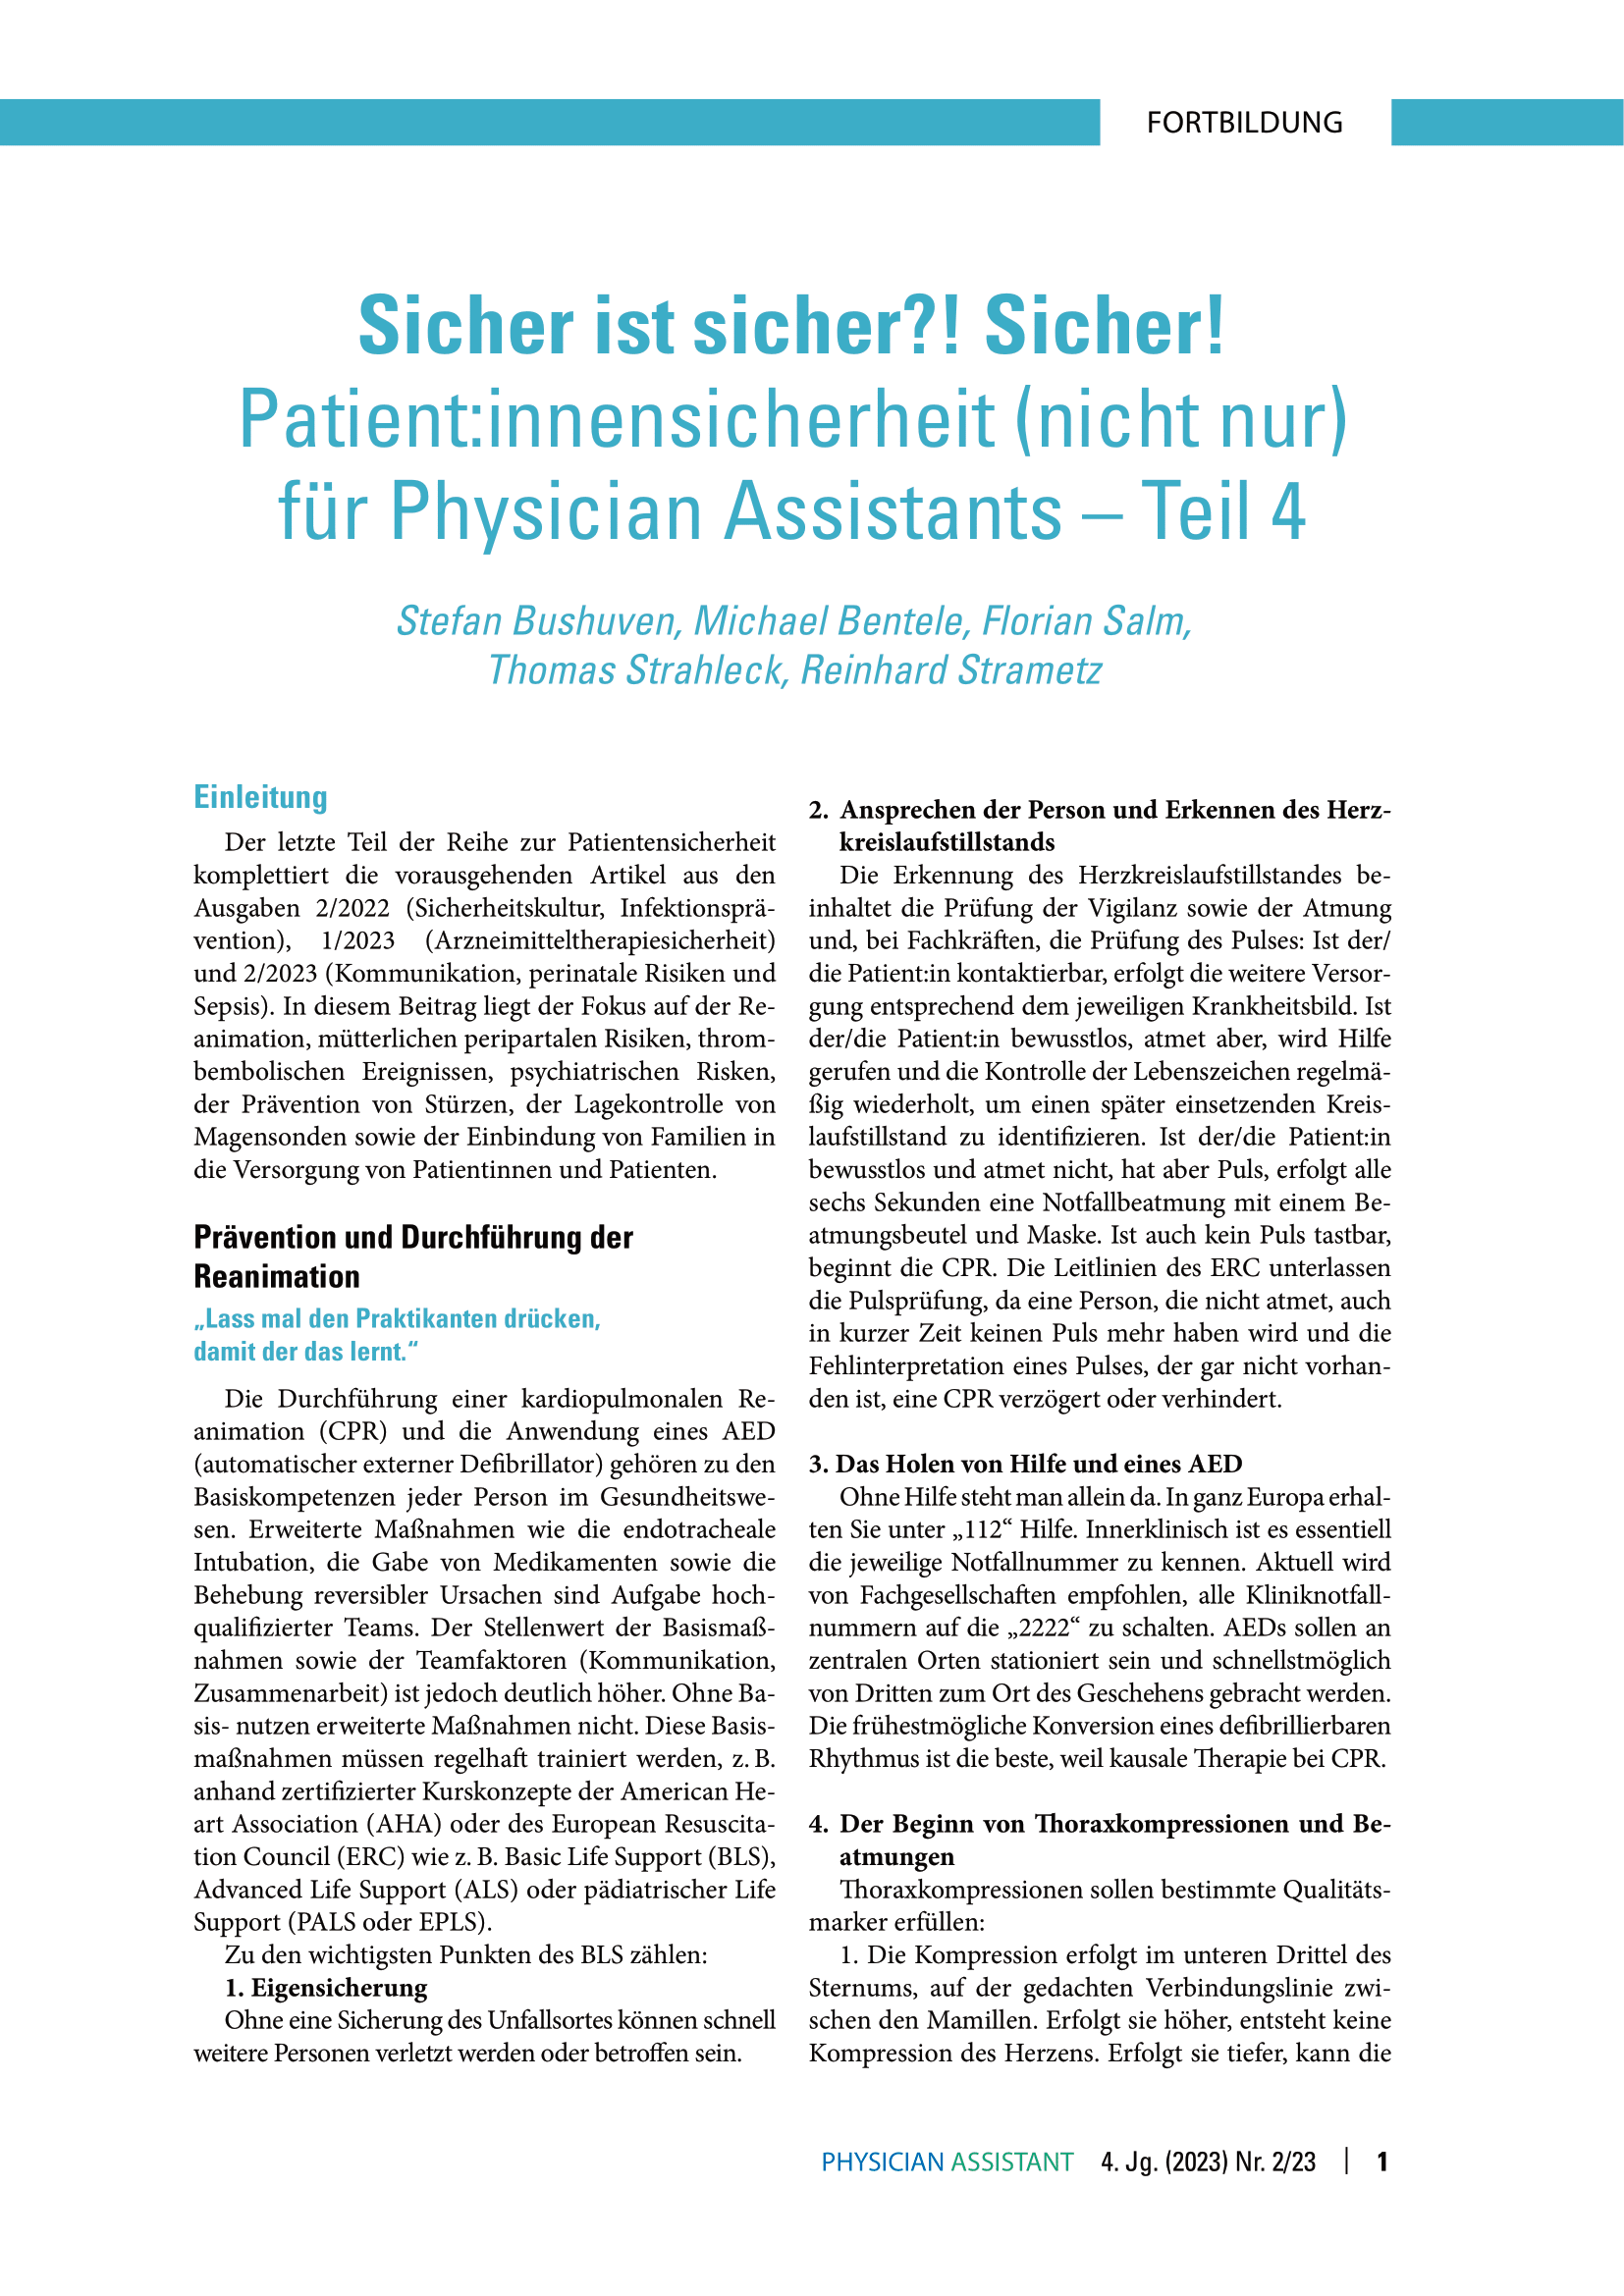 online only Patient:innensicherheit, Teil 4